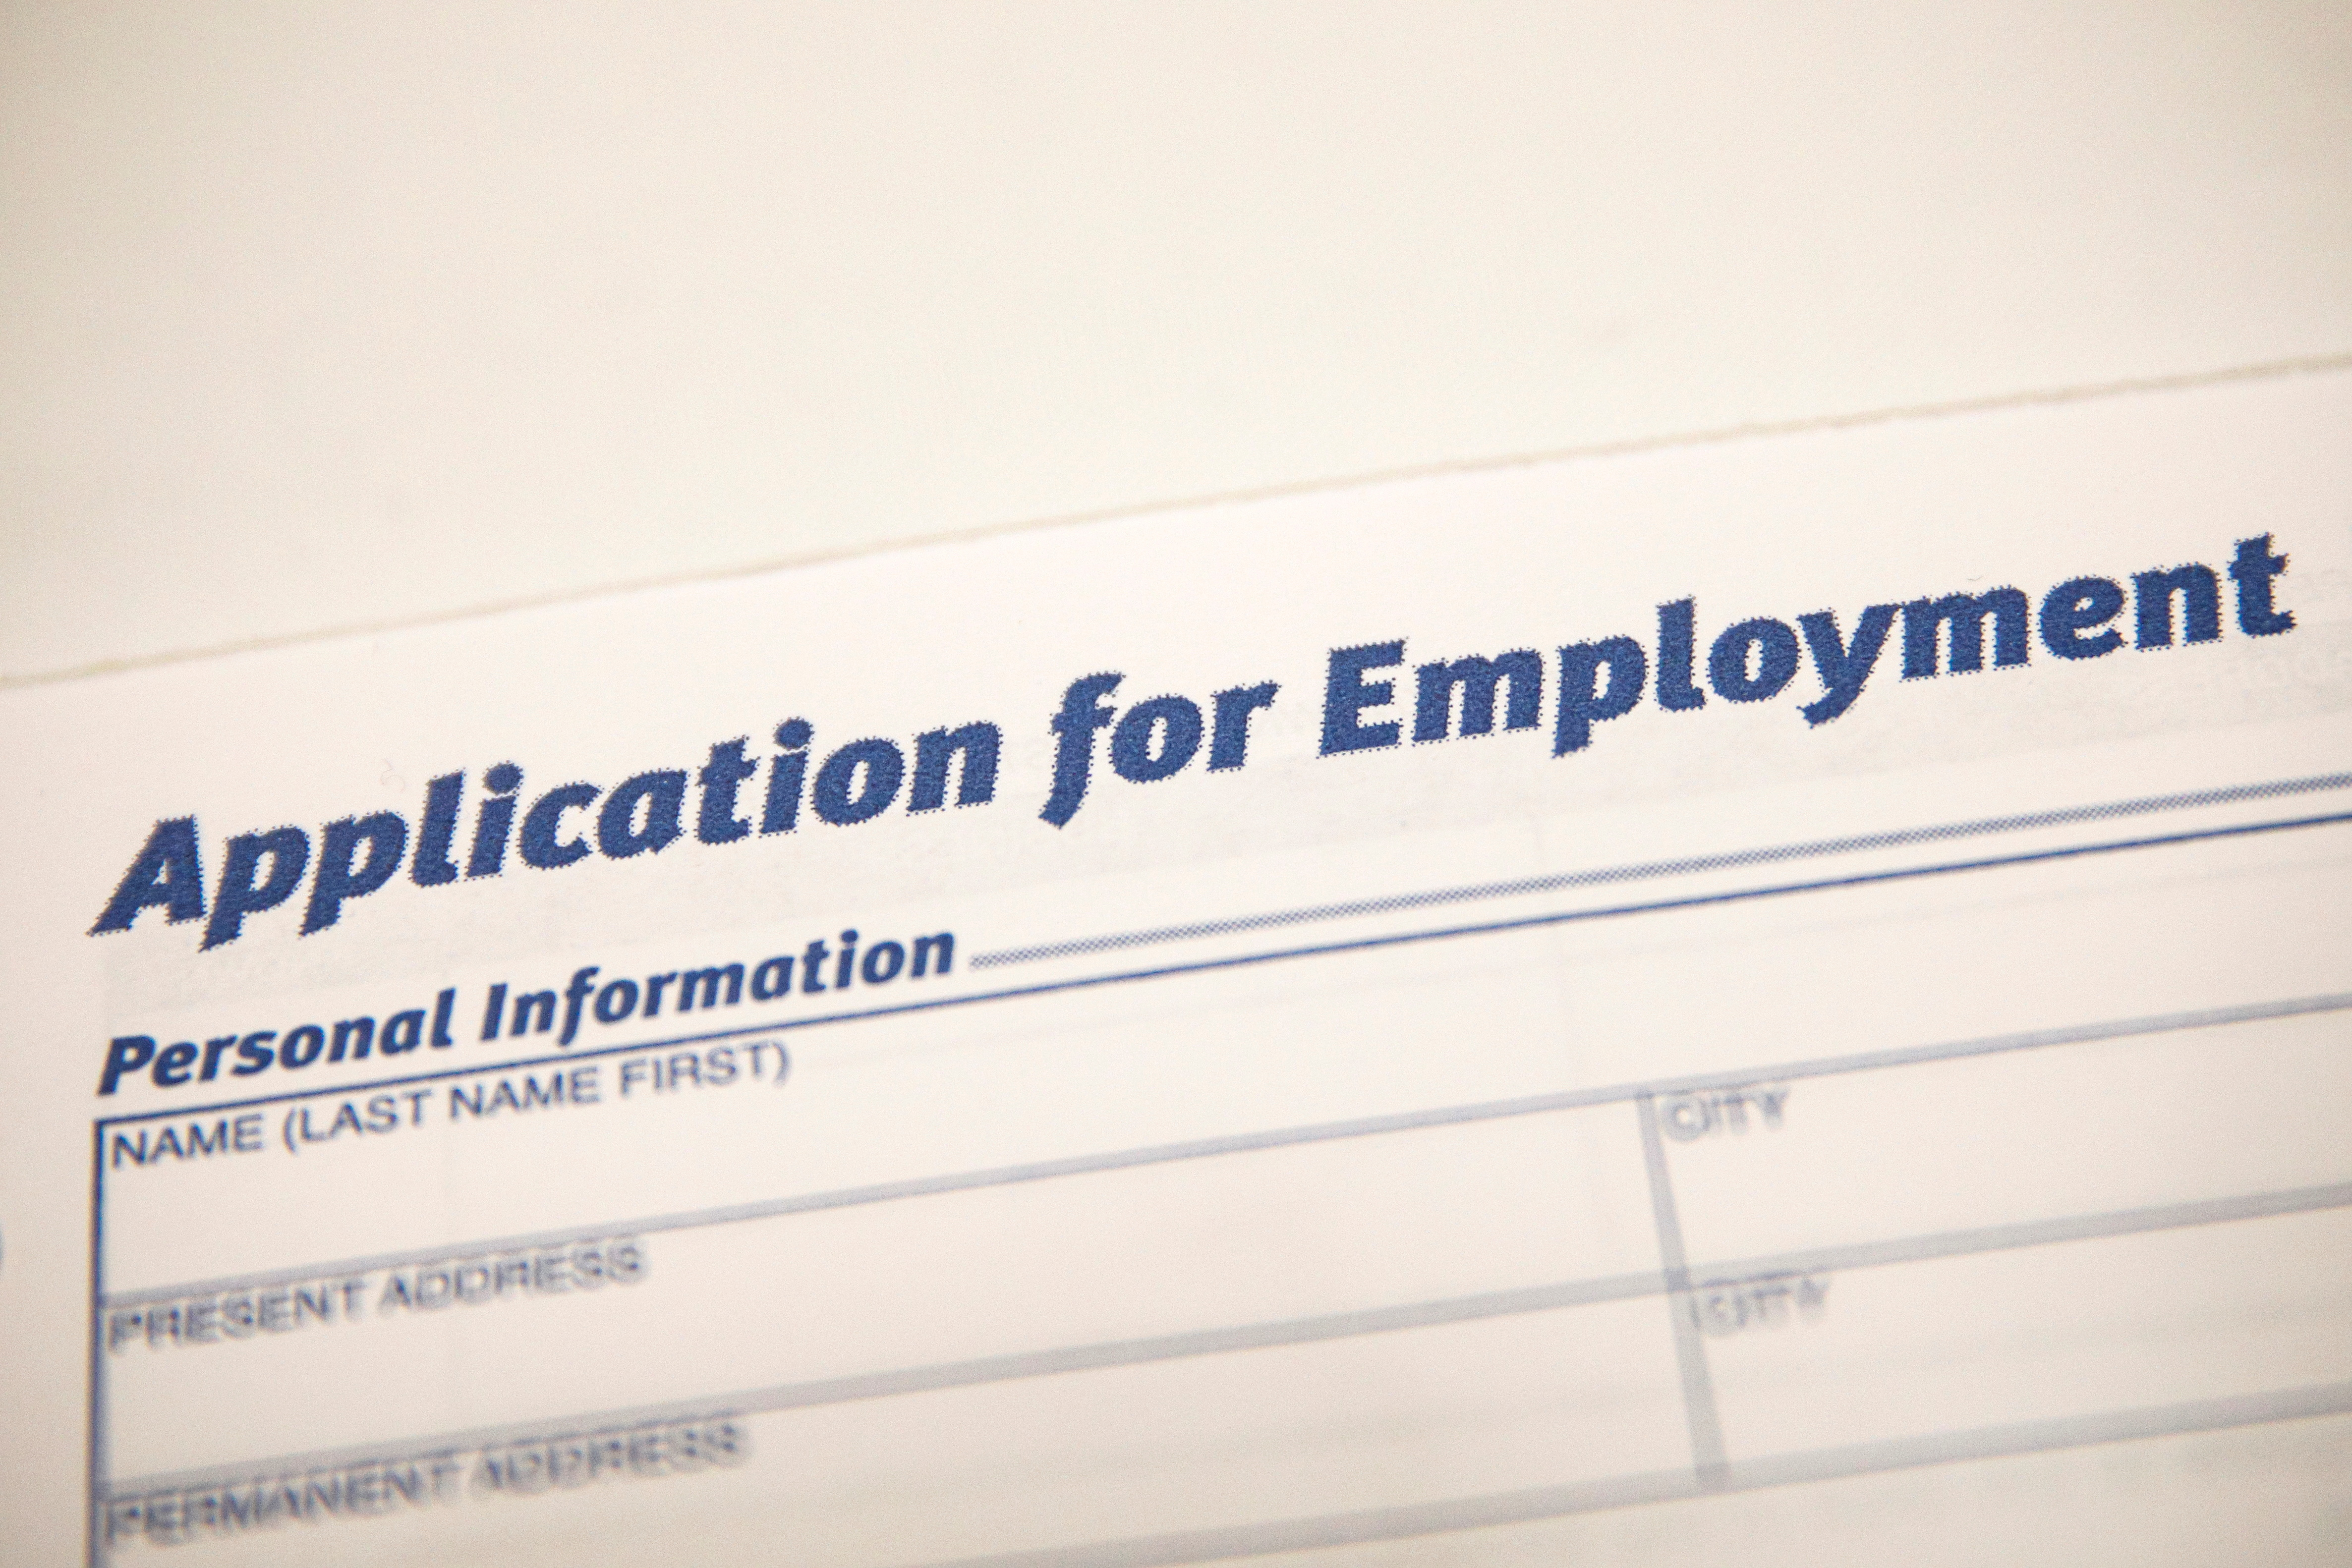 米新規失業保険申請、21万2000件と横ばい　労働市場の堅調さ続く